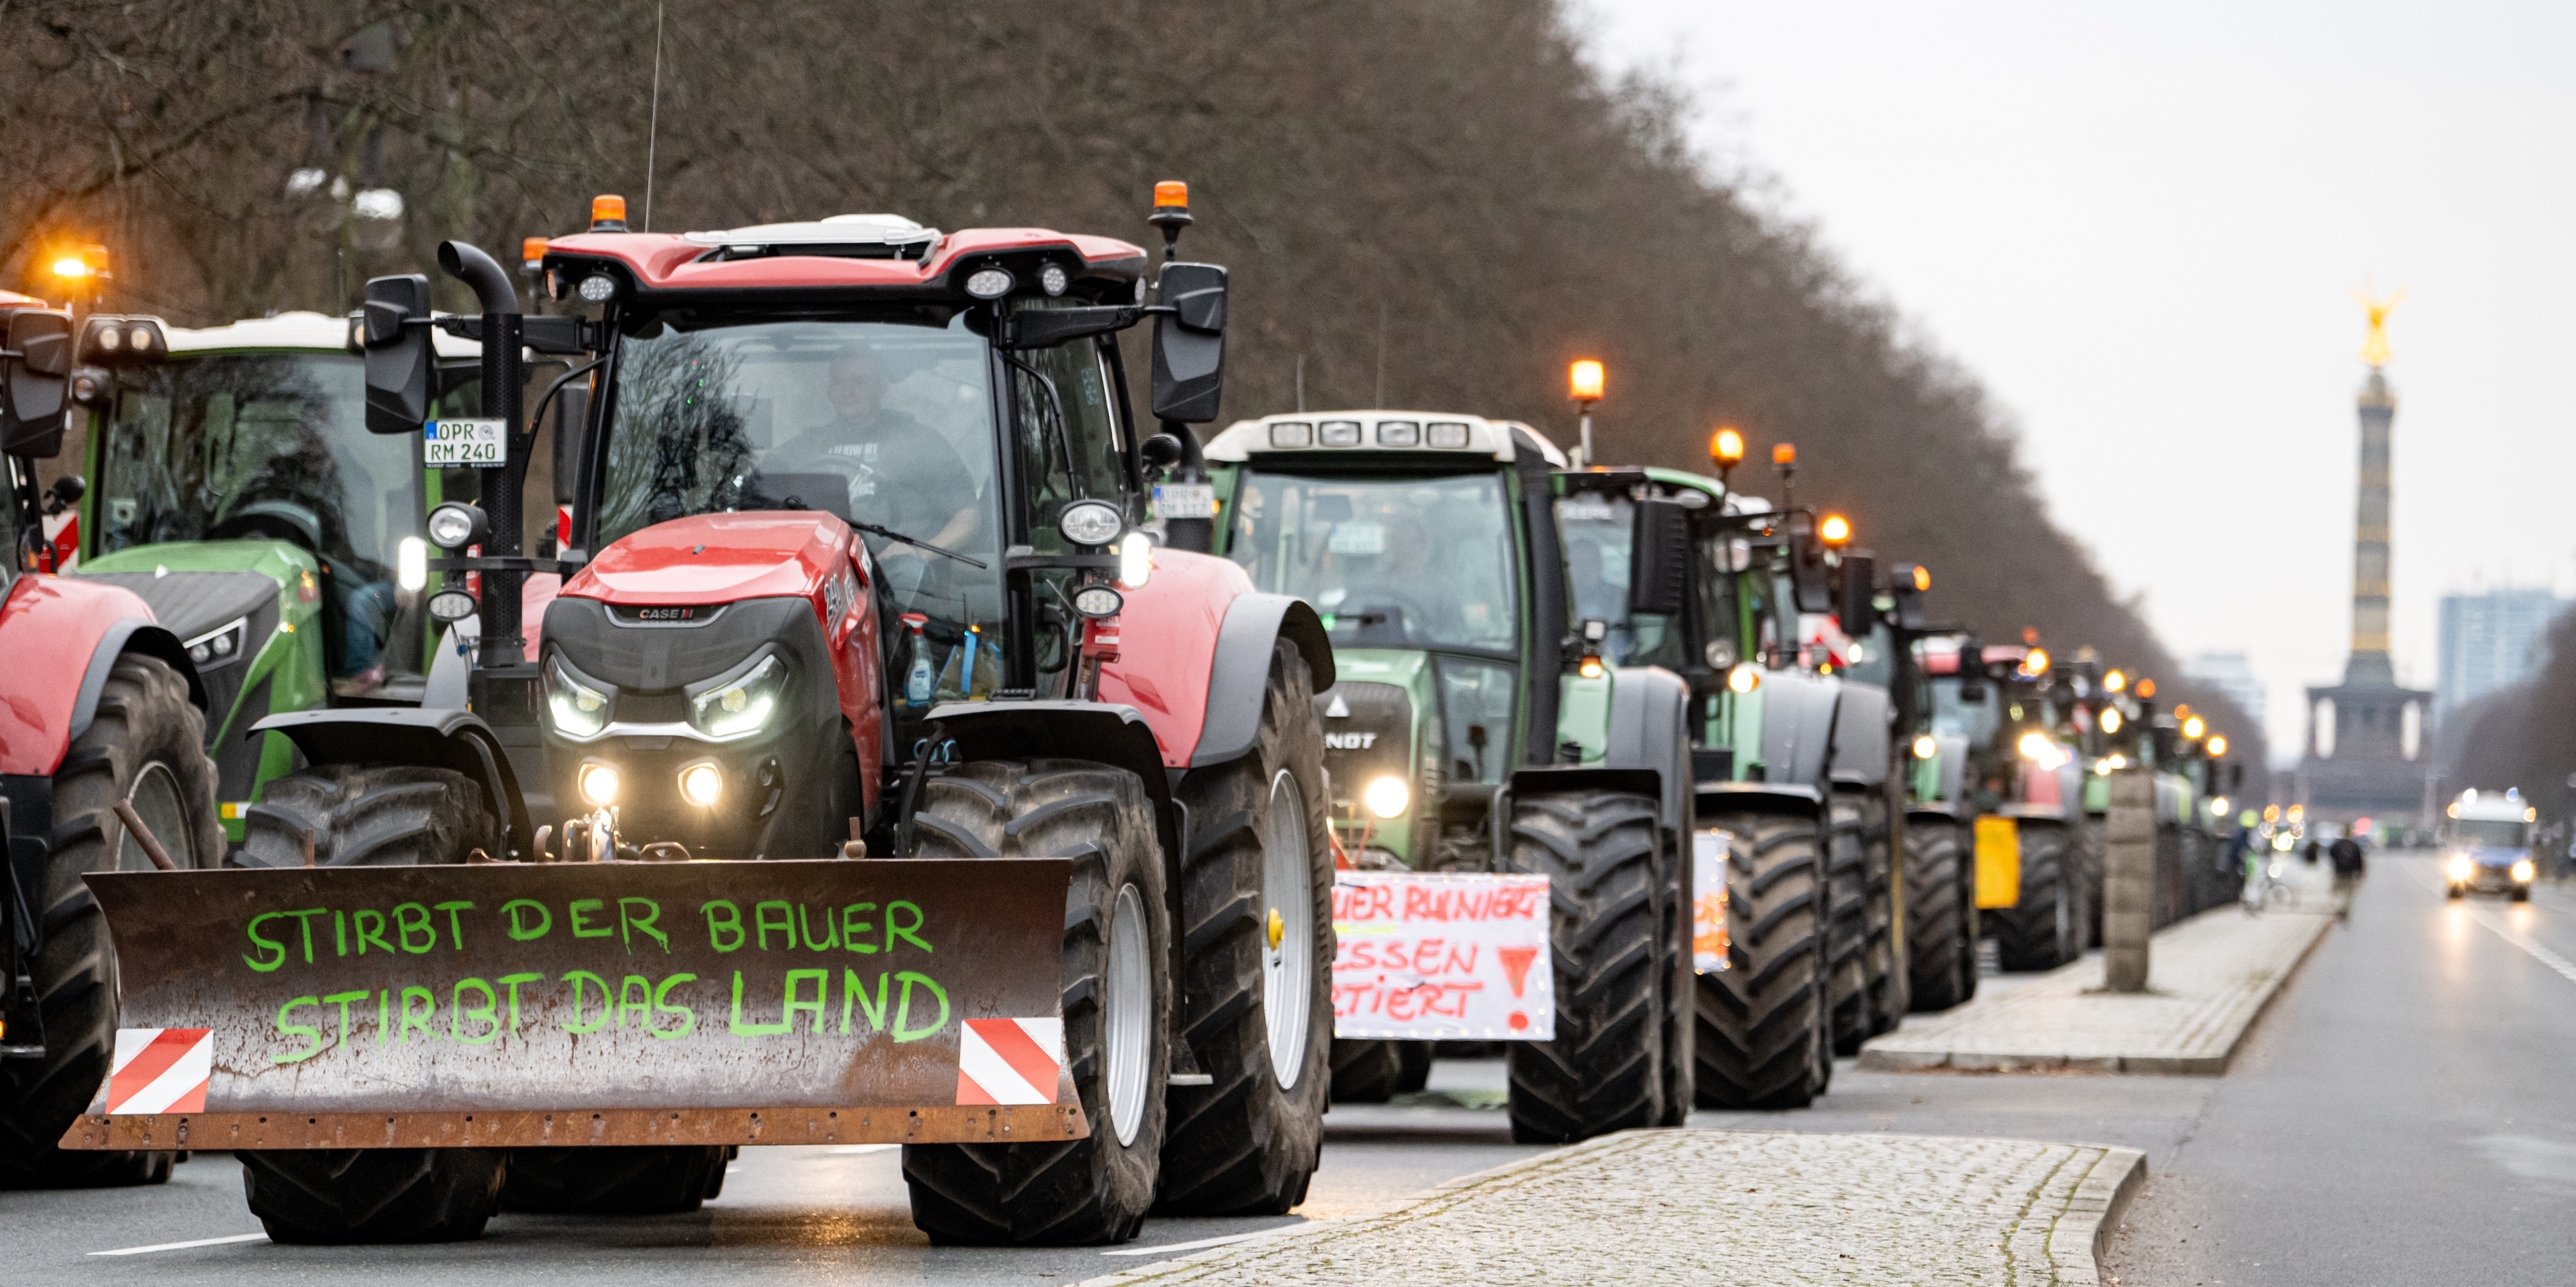 Eine Reihe Traktoren auf einer Demo auf der Straße des 17. Juni in Berlin, der erste trägt die Aufschrift "Stirbt der Bauer, stirbt das Land"